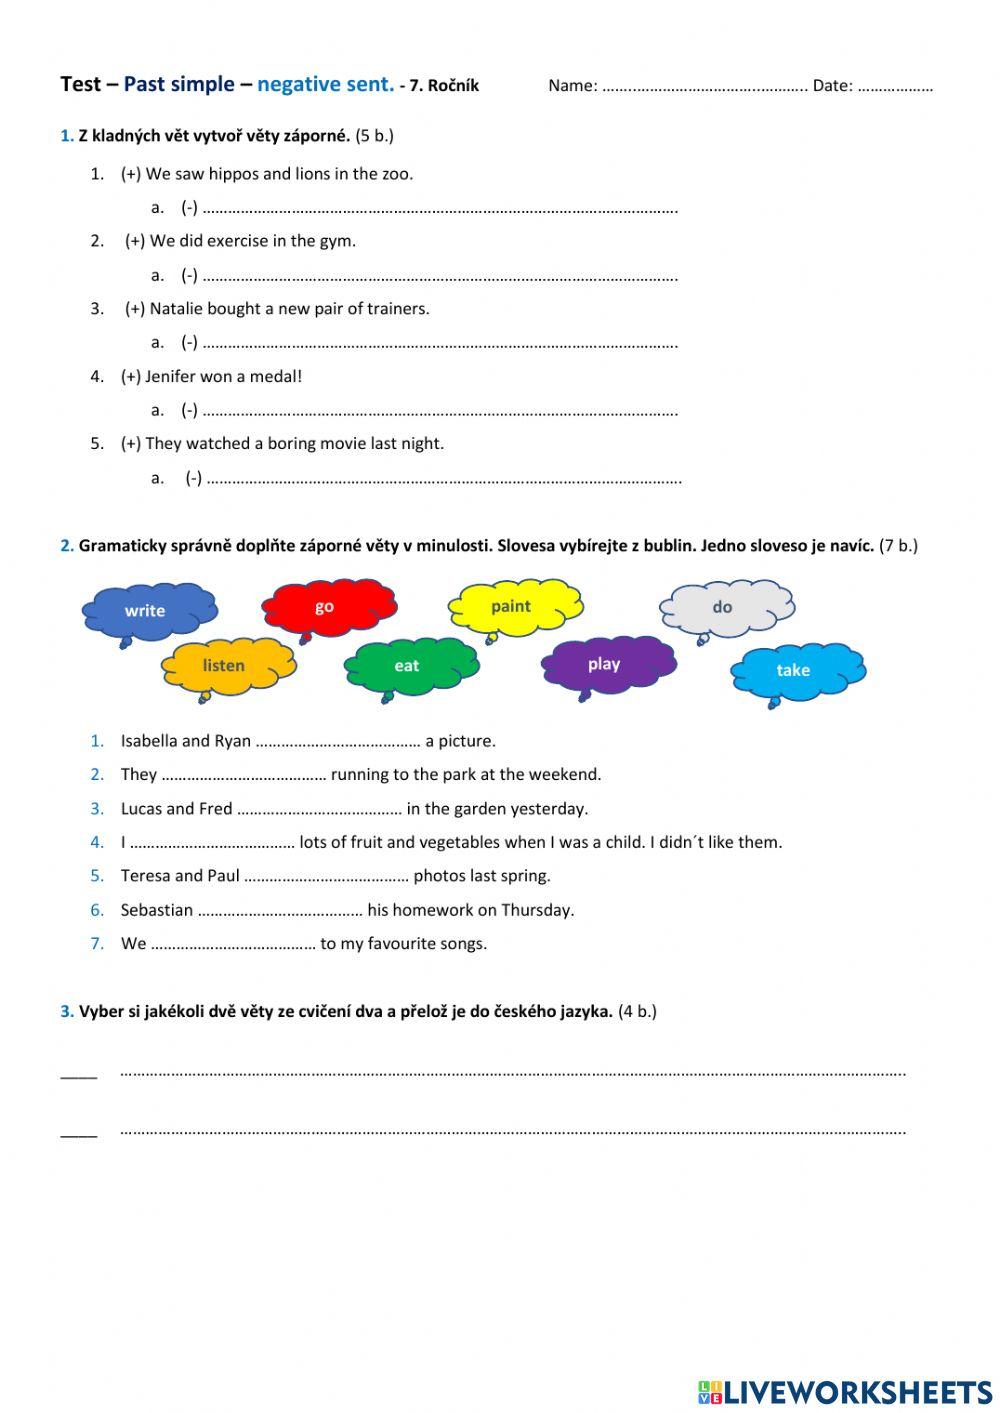 Test - Past simple negative sentences (7th grade)